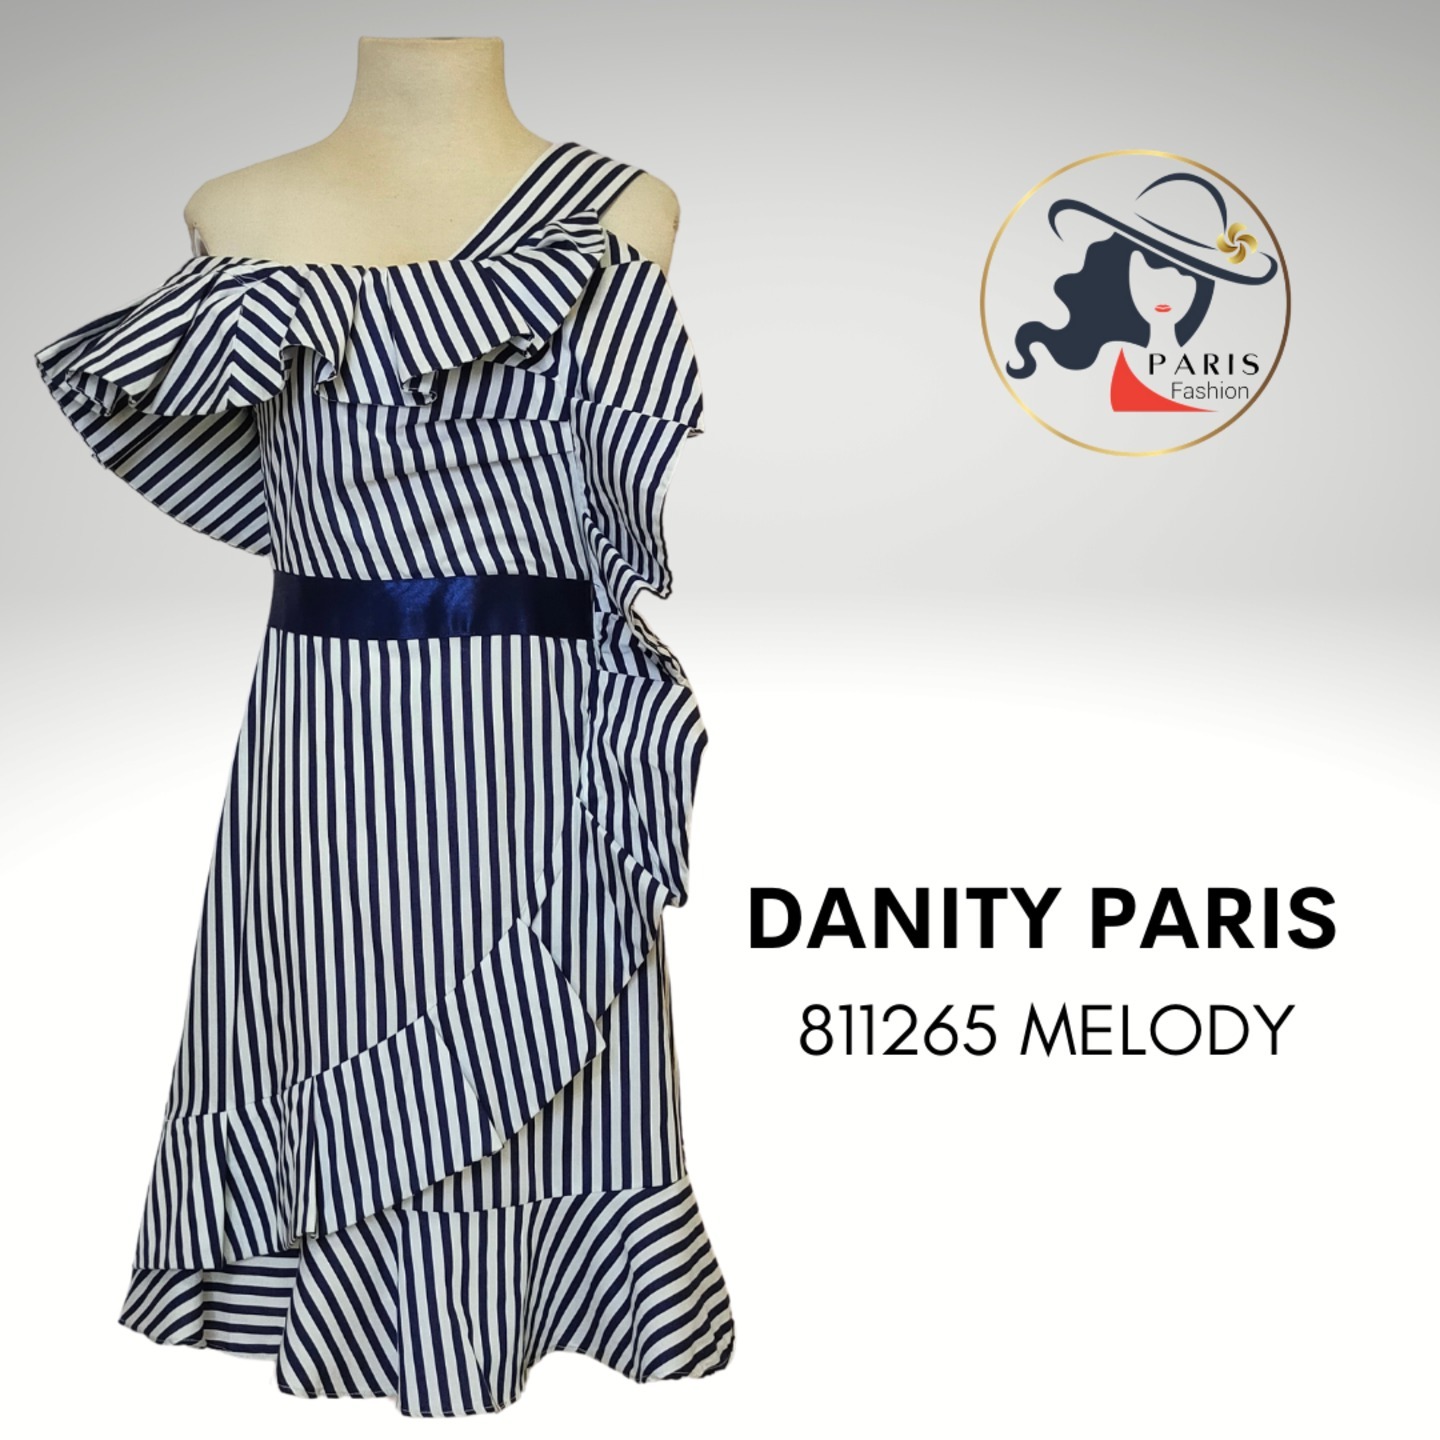 DANITY PARIS 811265 ROBE MELODY ASSYMETRIC RUFFLES STRIPED DRESS